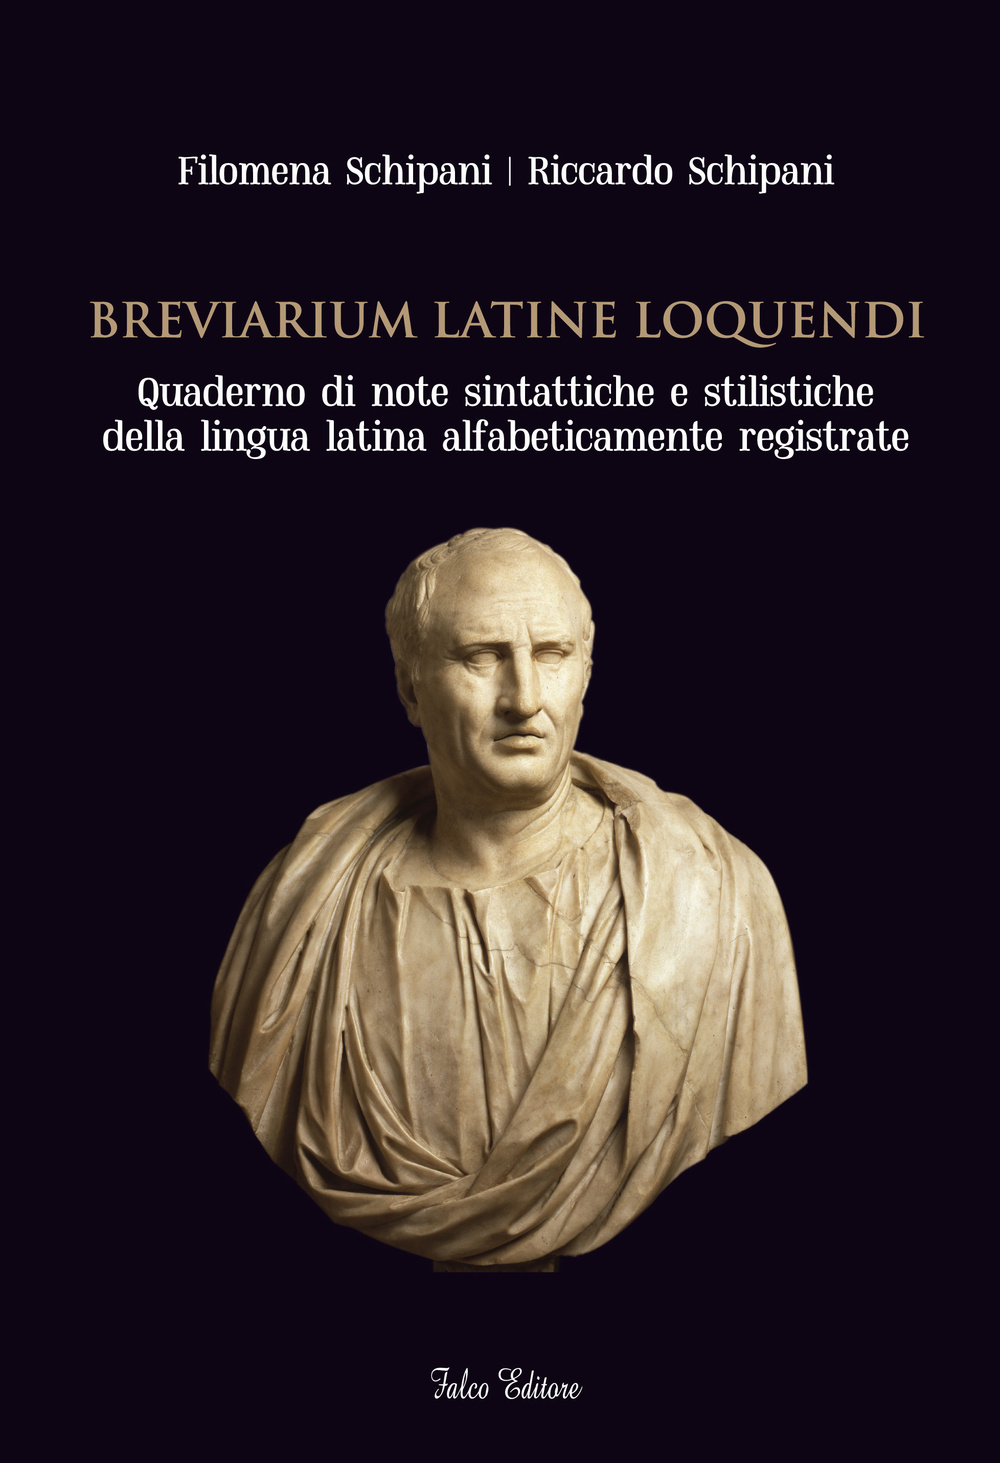 Breviarium latine loquendi. Quaderno di note sintattiche e stilistiche della lingua latina alfabeticamente registrate